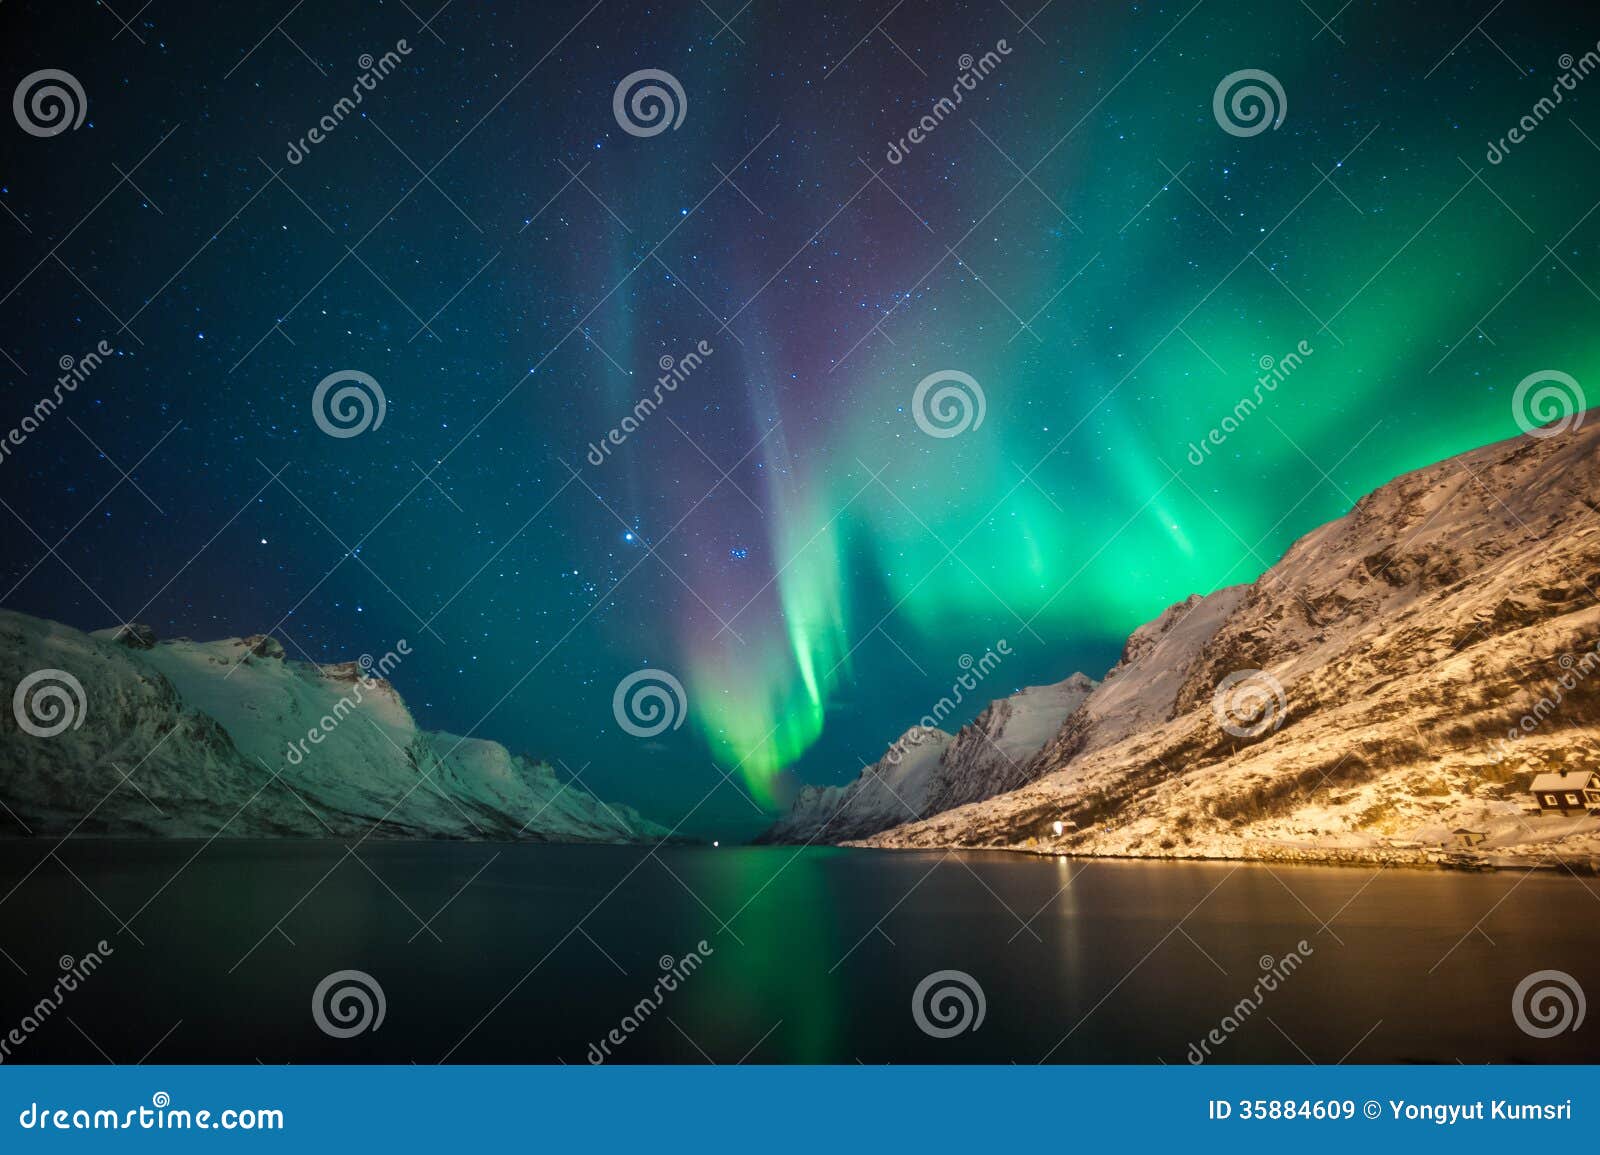 northern lights above fjords